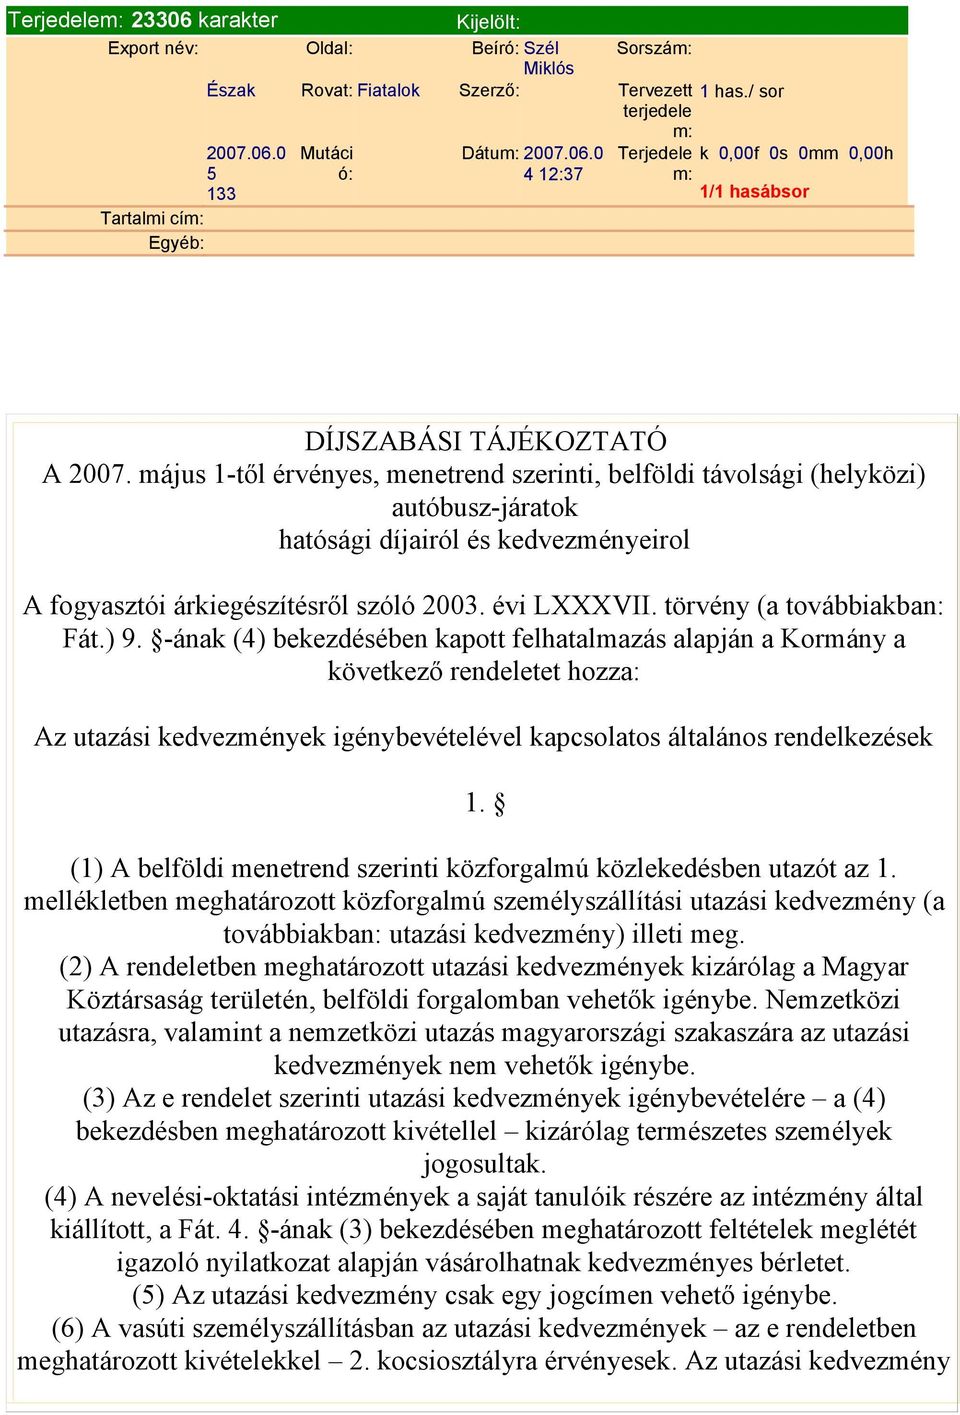 díjairól és kedvezményeirol A fogyasztói árkiegészítésről szóló 2003 évi LXXXVII törvény (a továbbiakban: Fát) 9 -ának (4) bekezdésében kapott felhatalmazás alapján a Kormány a következő rendeletet